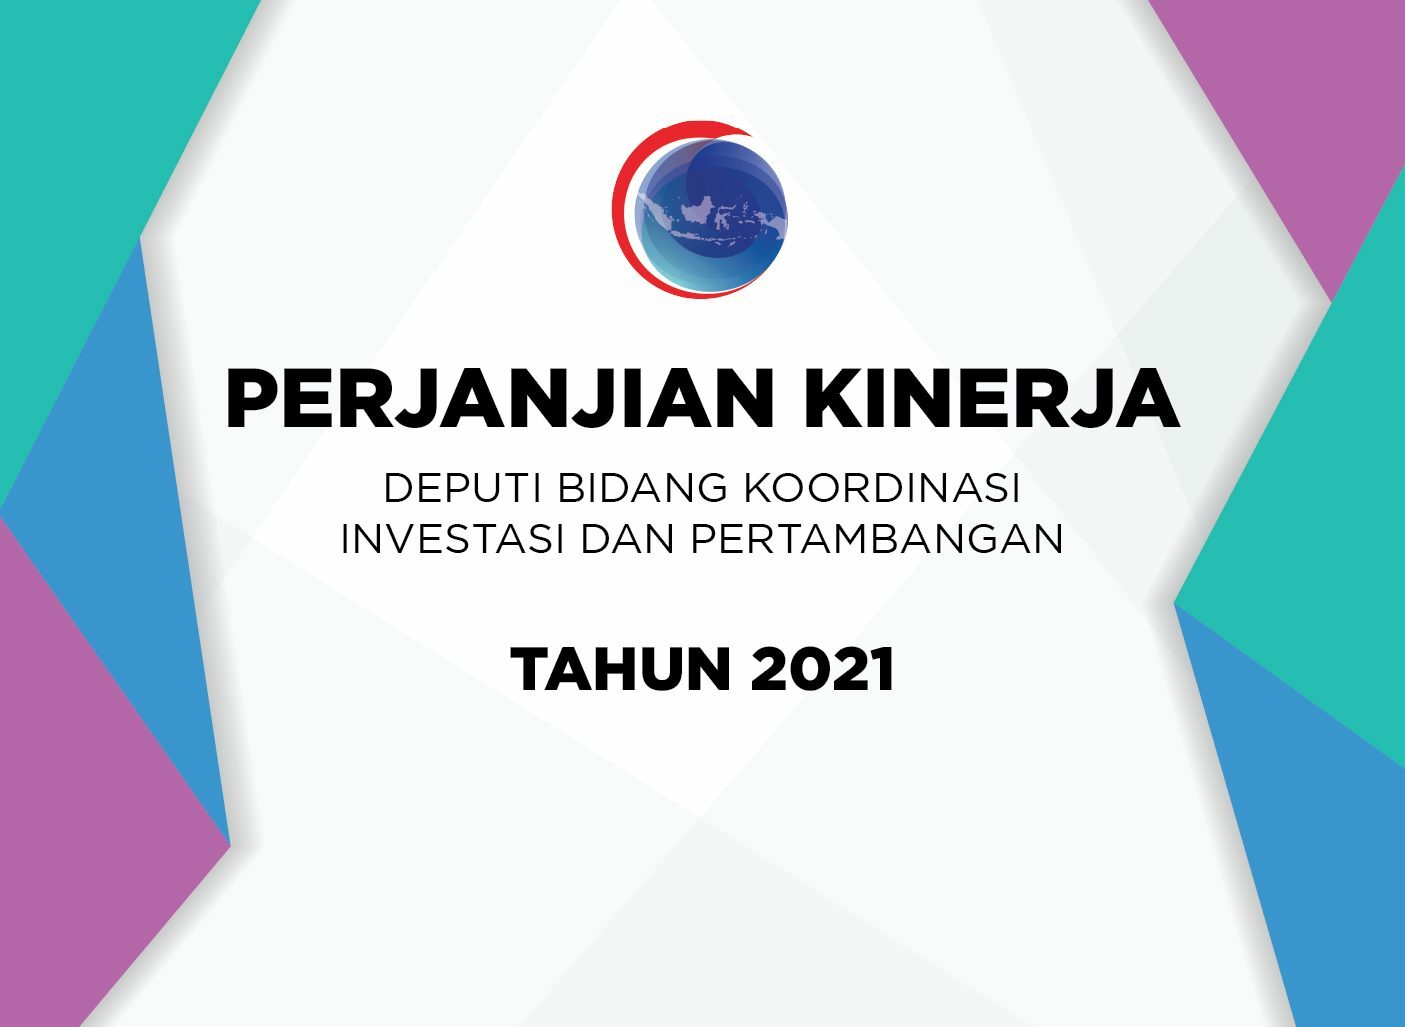 Perjanjian Kinerja Deputi Bidang Koordinasi Investasi dan Pertambangan Tahun 2021